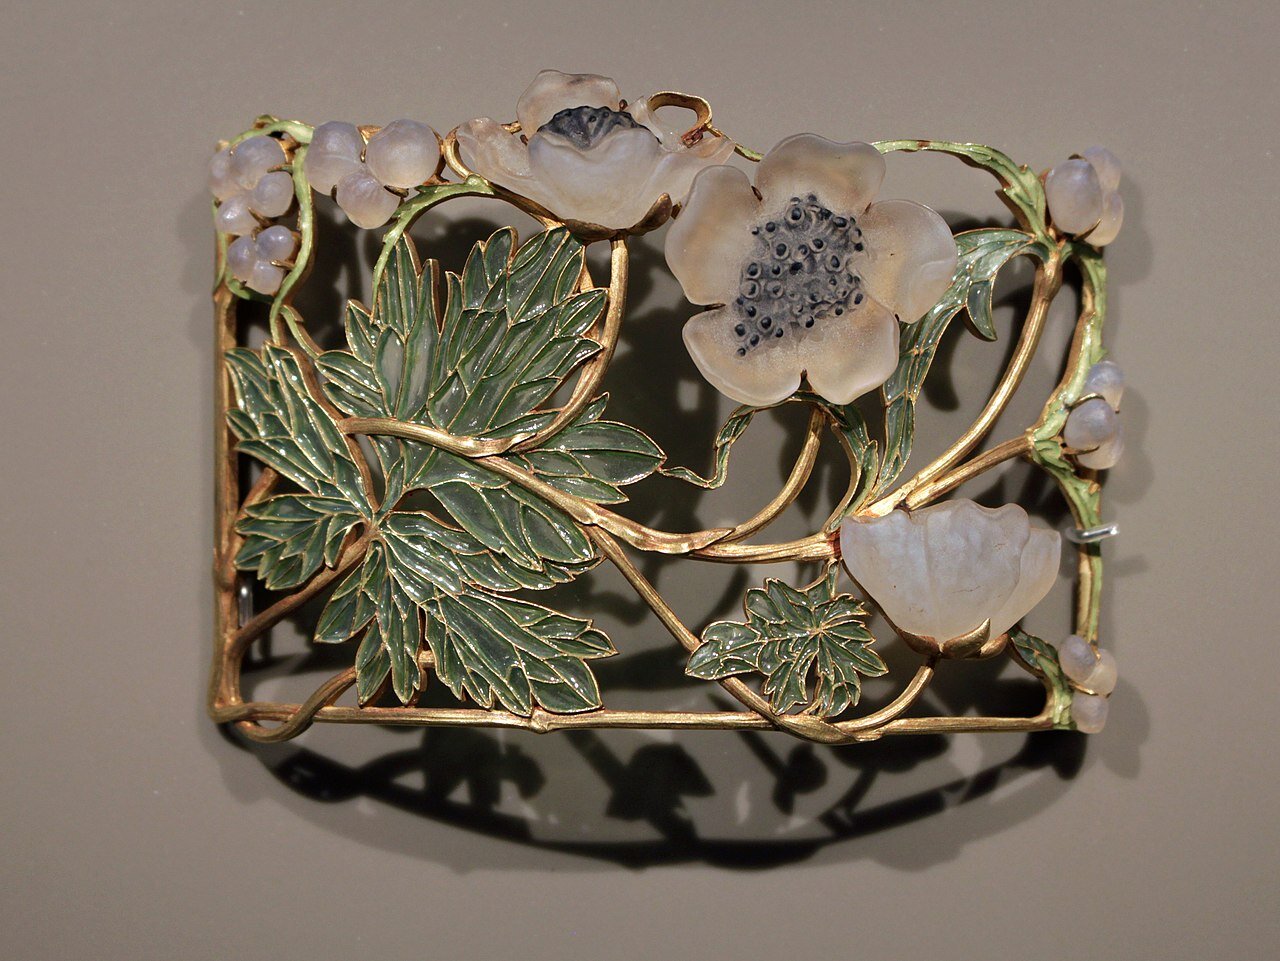 Zdjęcie przedstawia secesyjną broszkę zrobioną ze złota i kamieni. Znajduje się na niej motyw kwiatowy.